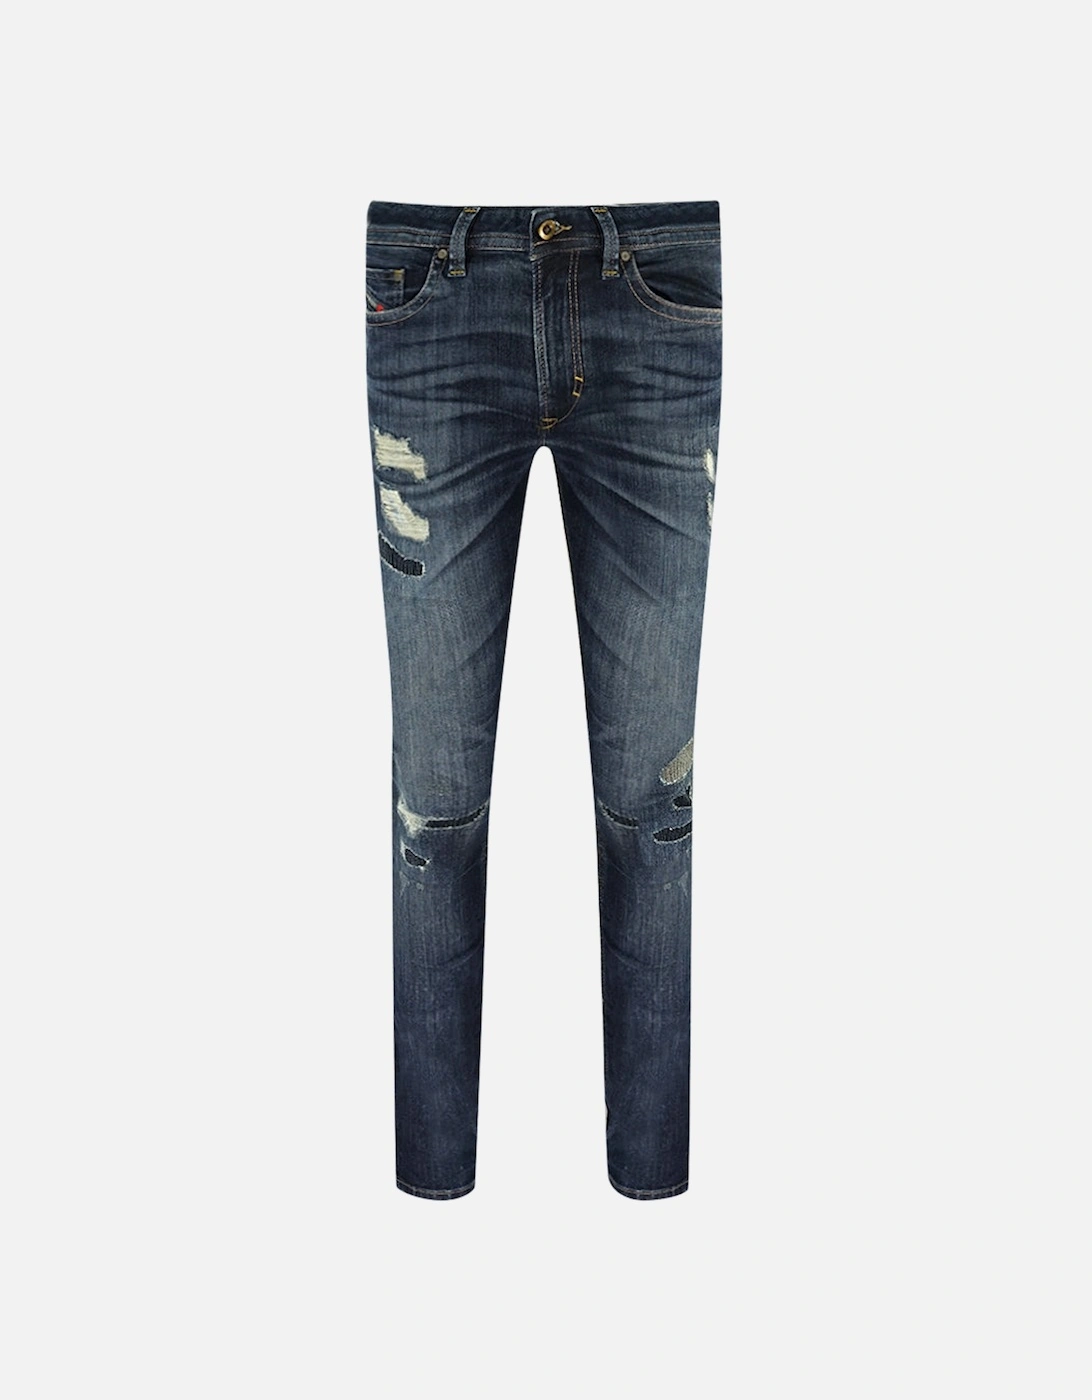 Thavar 854T Jeans, 3 of 2